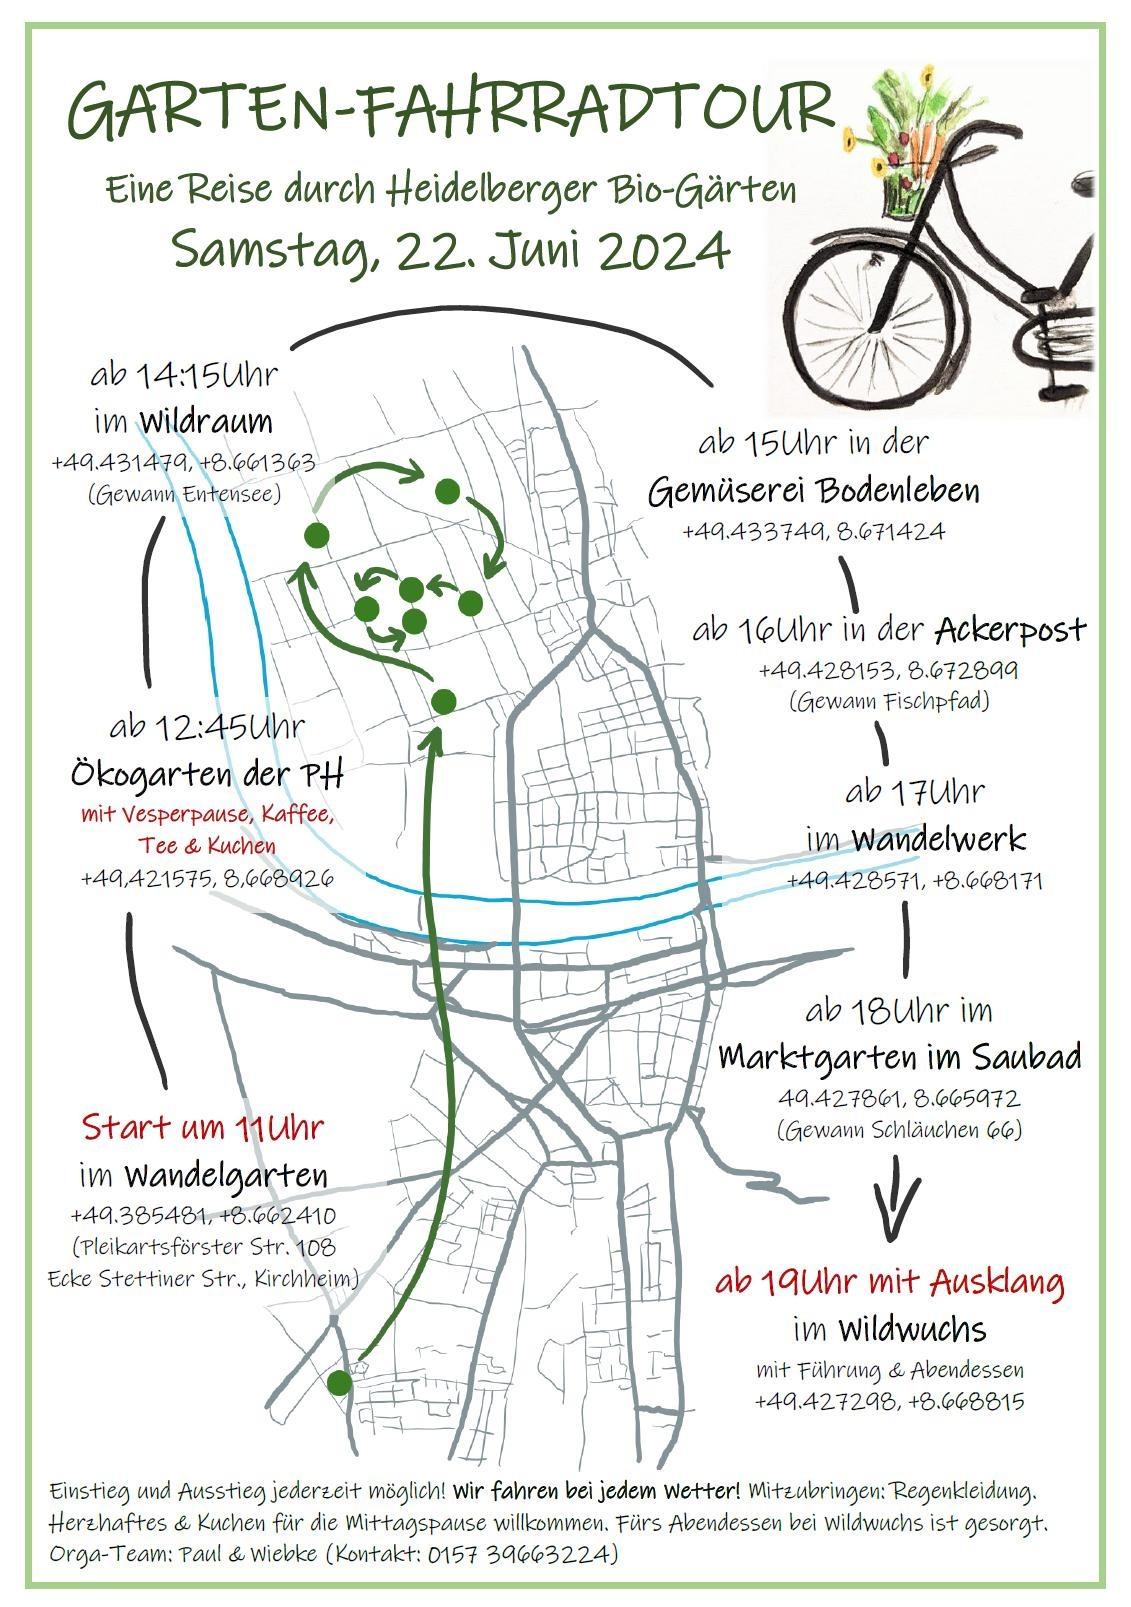 Radtour durch Heidelberger Bio-Gärten am Samstag, den 22. Juni 2024 in Heidelberg